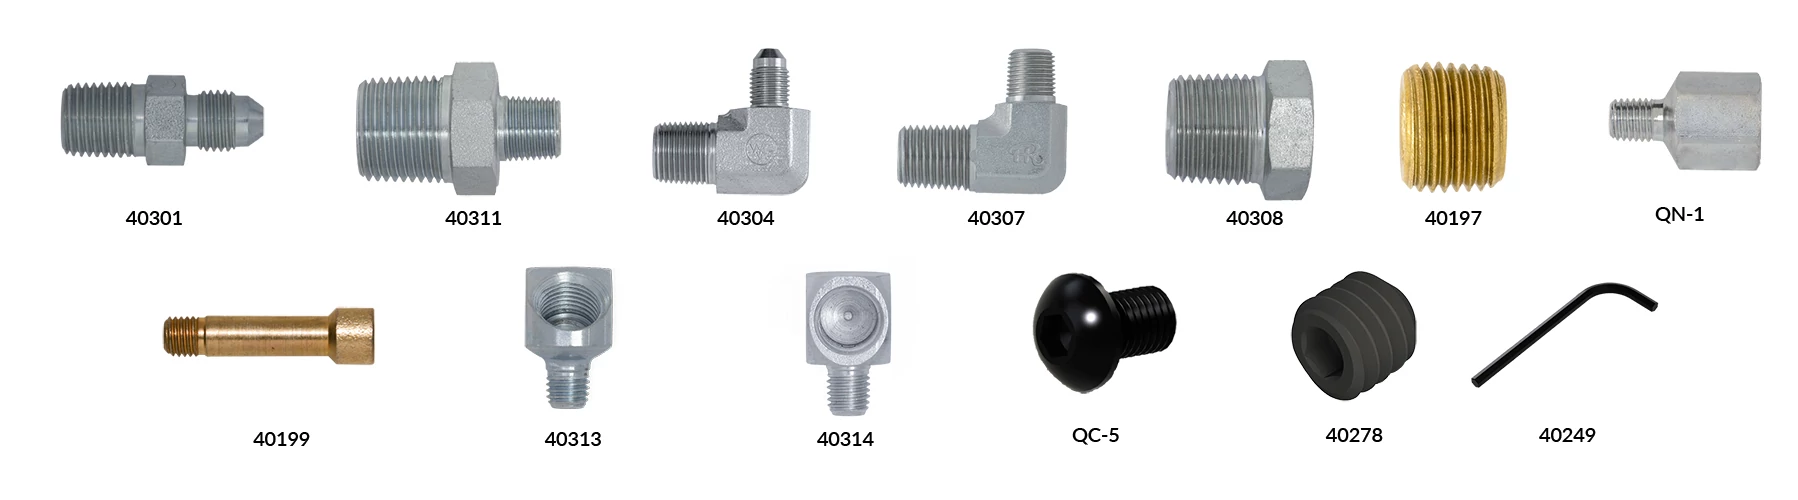 Quick Change Holder Parts-Coolant Accessories